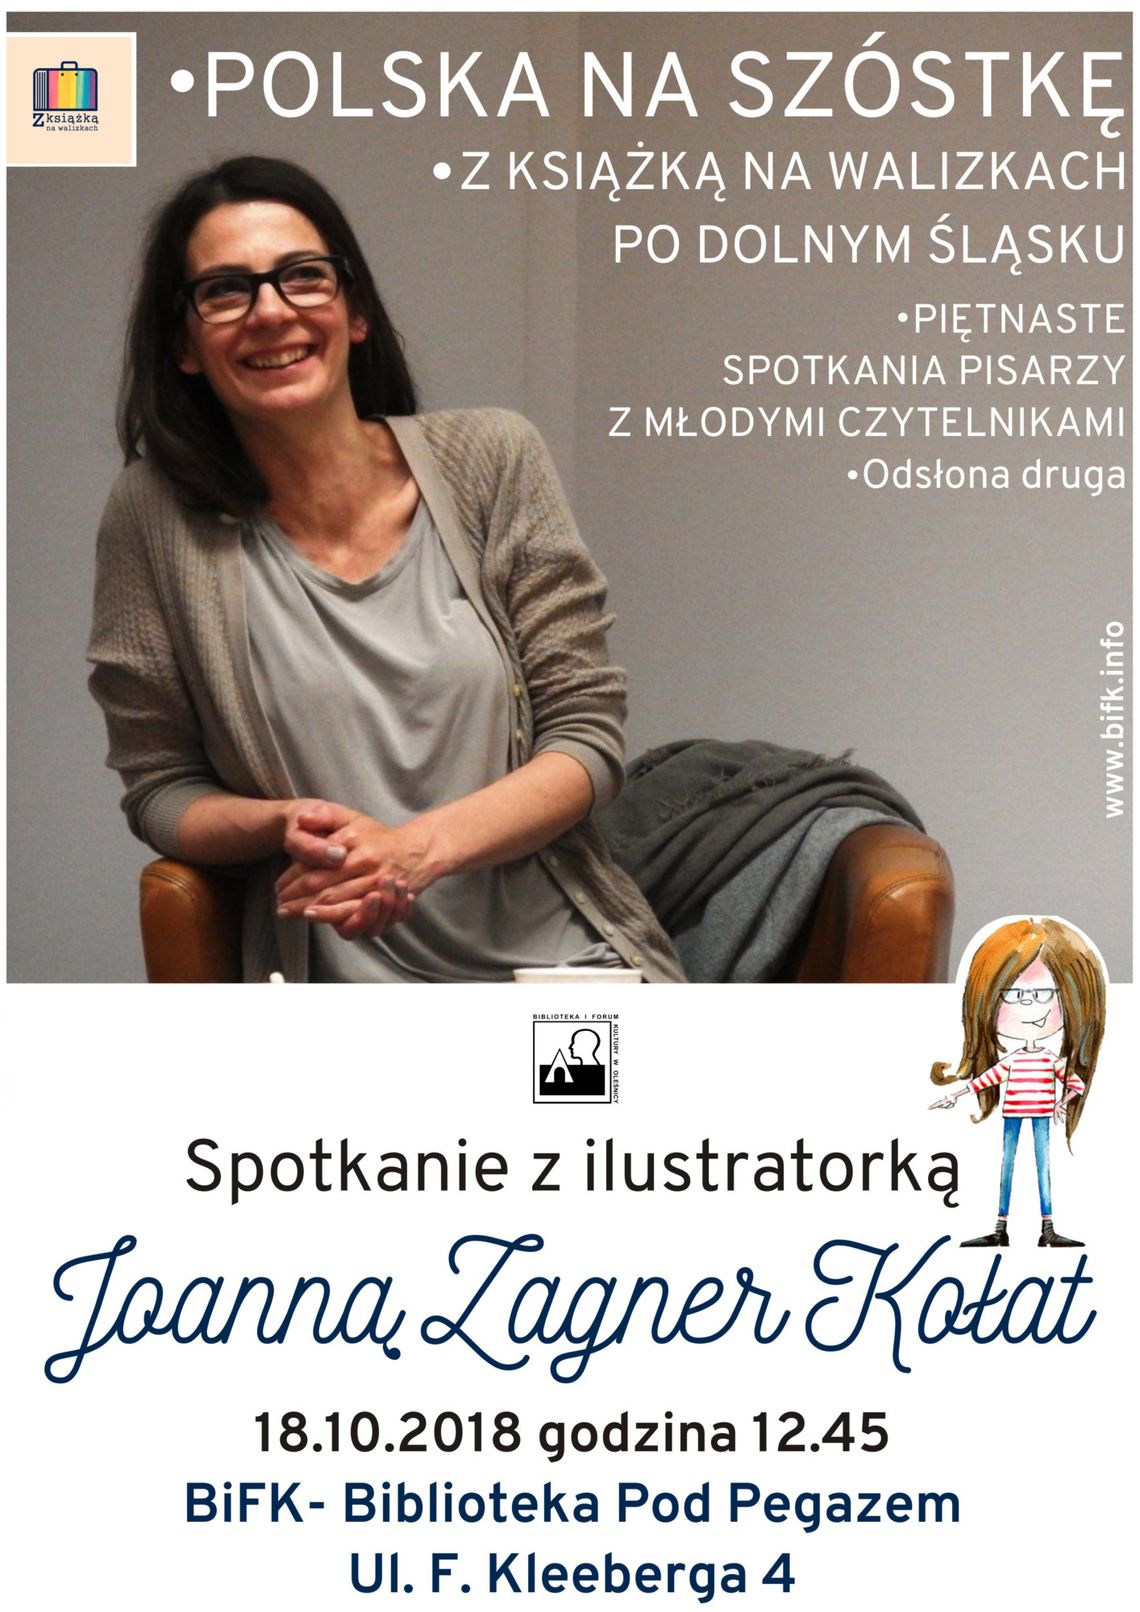 Spotkanie autorskie Joanny Zagner Kołat